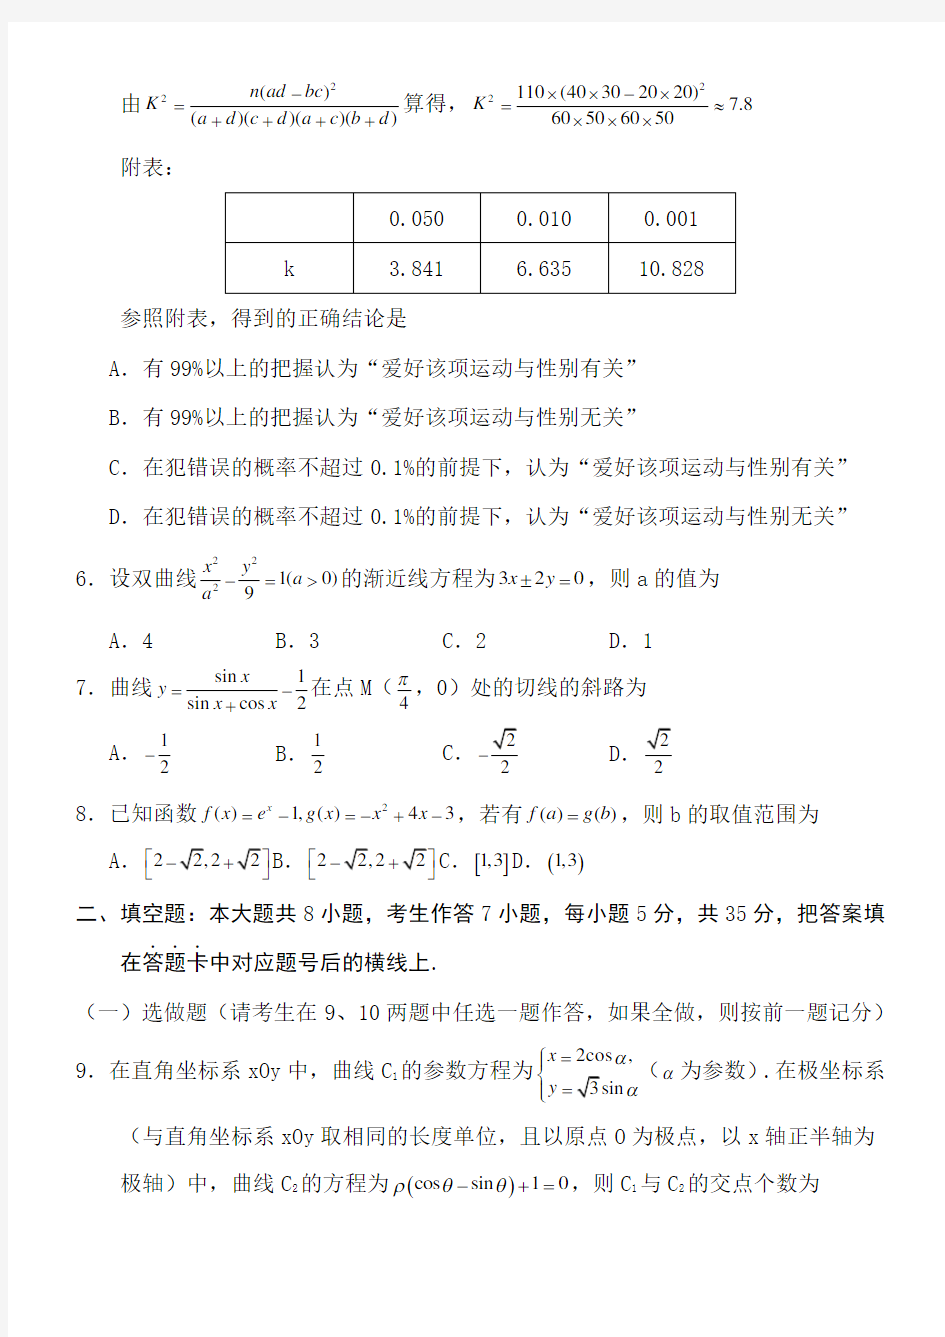 2011年高考湖南卷文科数学试题及答案